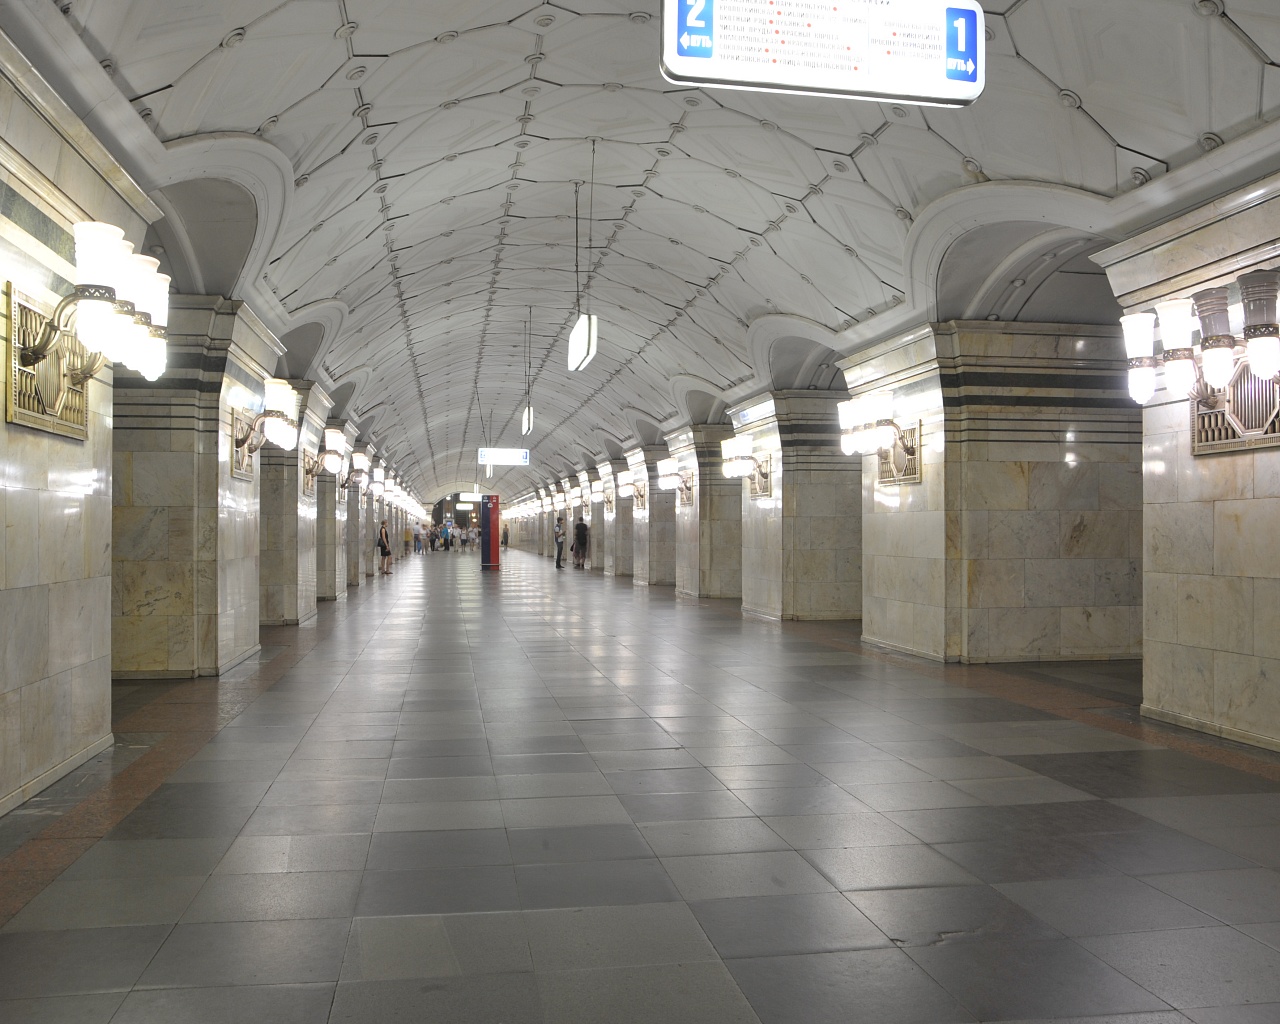 Реконструкция южного вестибюля метро "Спортивная" продлится до мая 2018 года